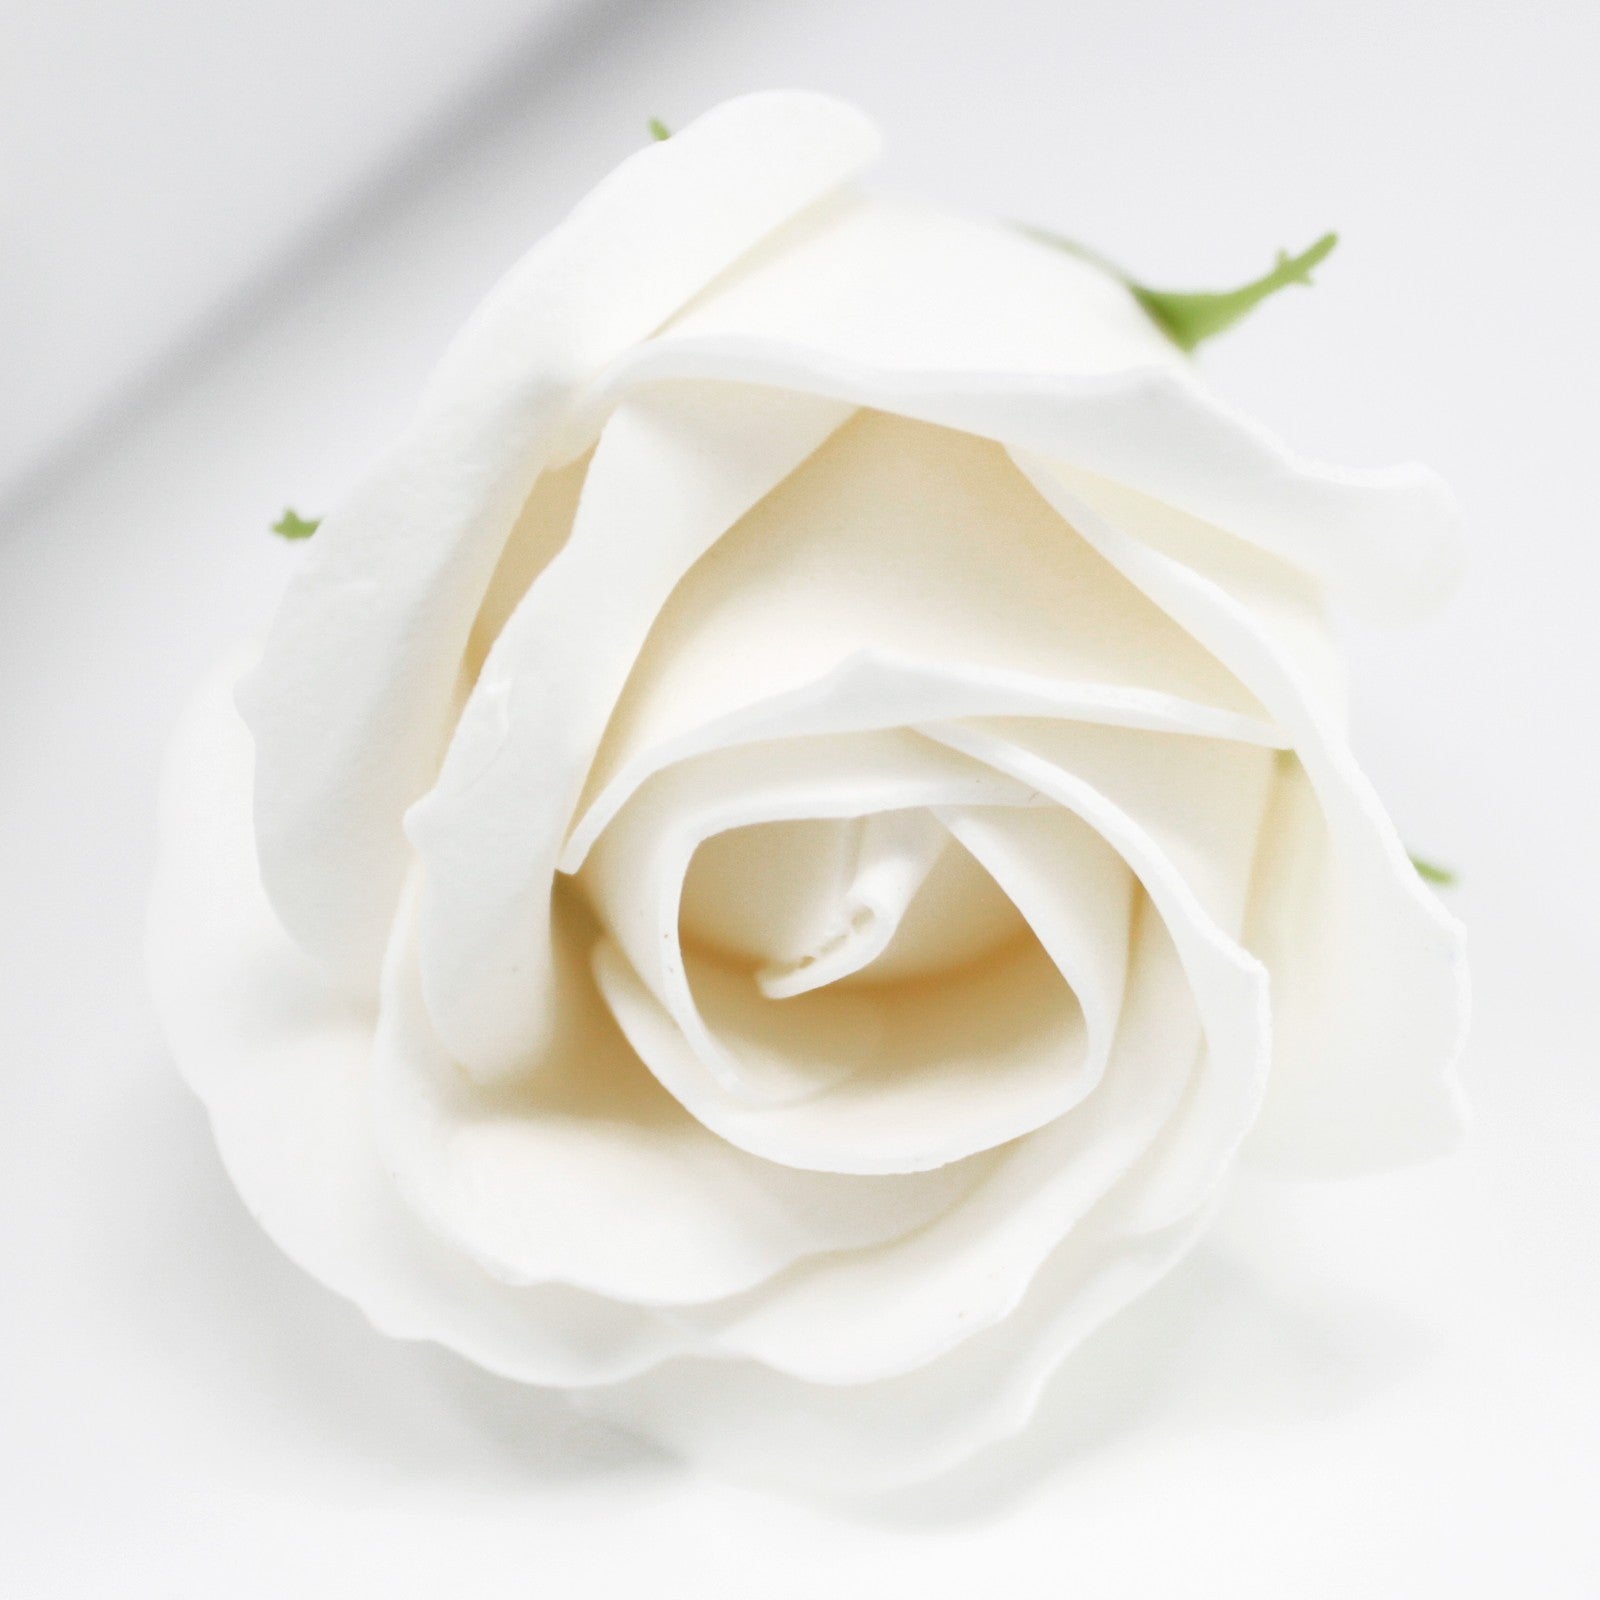 Soap Flower - Medium Rose All Colours